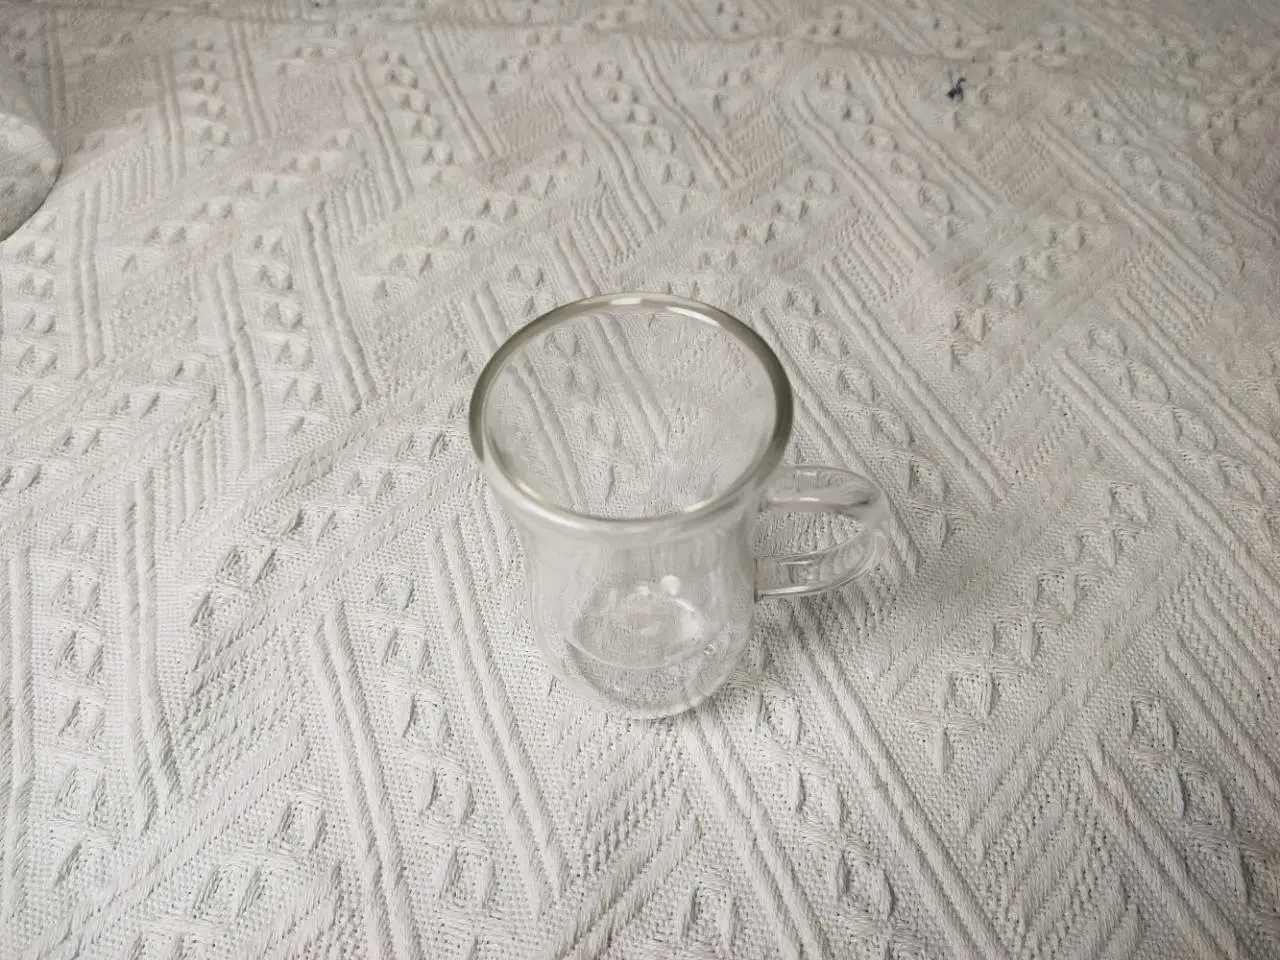 Grossista de 6 cm único Design de vidro Candle Holder, recipiente Galss, pote de flor de vidro, Ware de vidro, copo de vidro, Armazenamento de vidro, construção de vidro